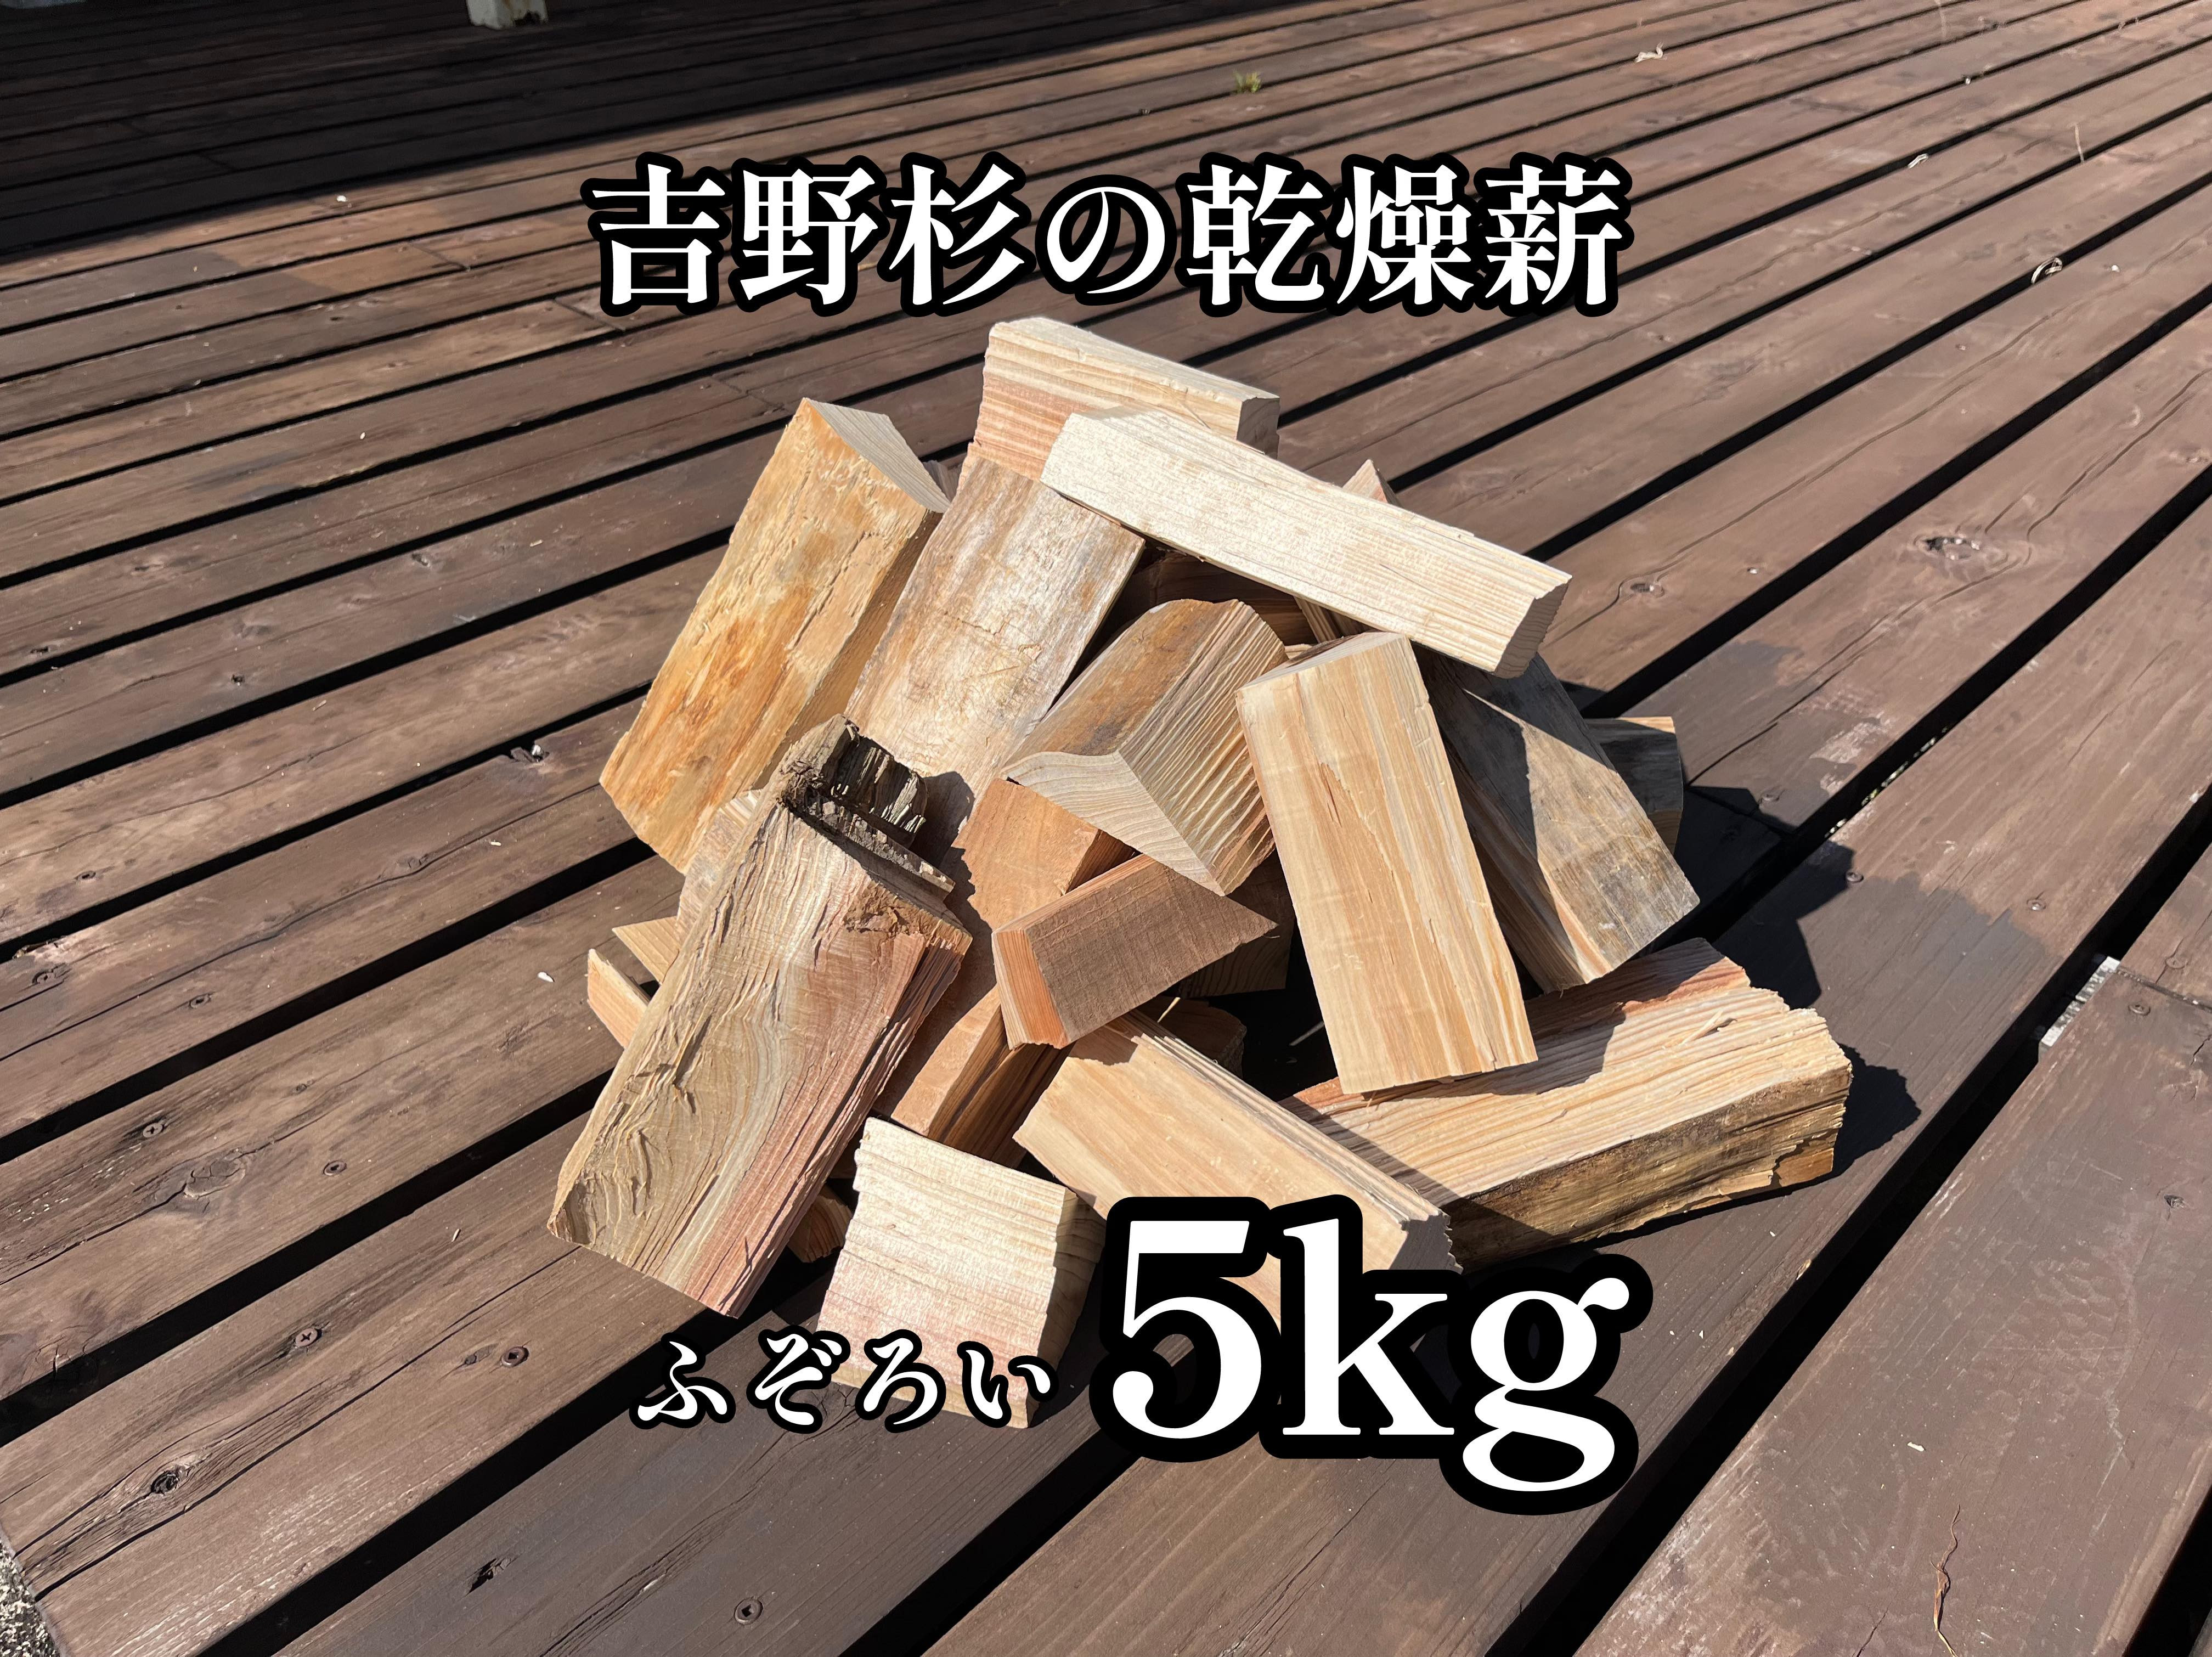 
吉野杉のふぞろい薪　約5kg 奈良県産材 乾燥材 薪ストーブ アウトドア キャンプ 焚き火 便利
